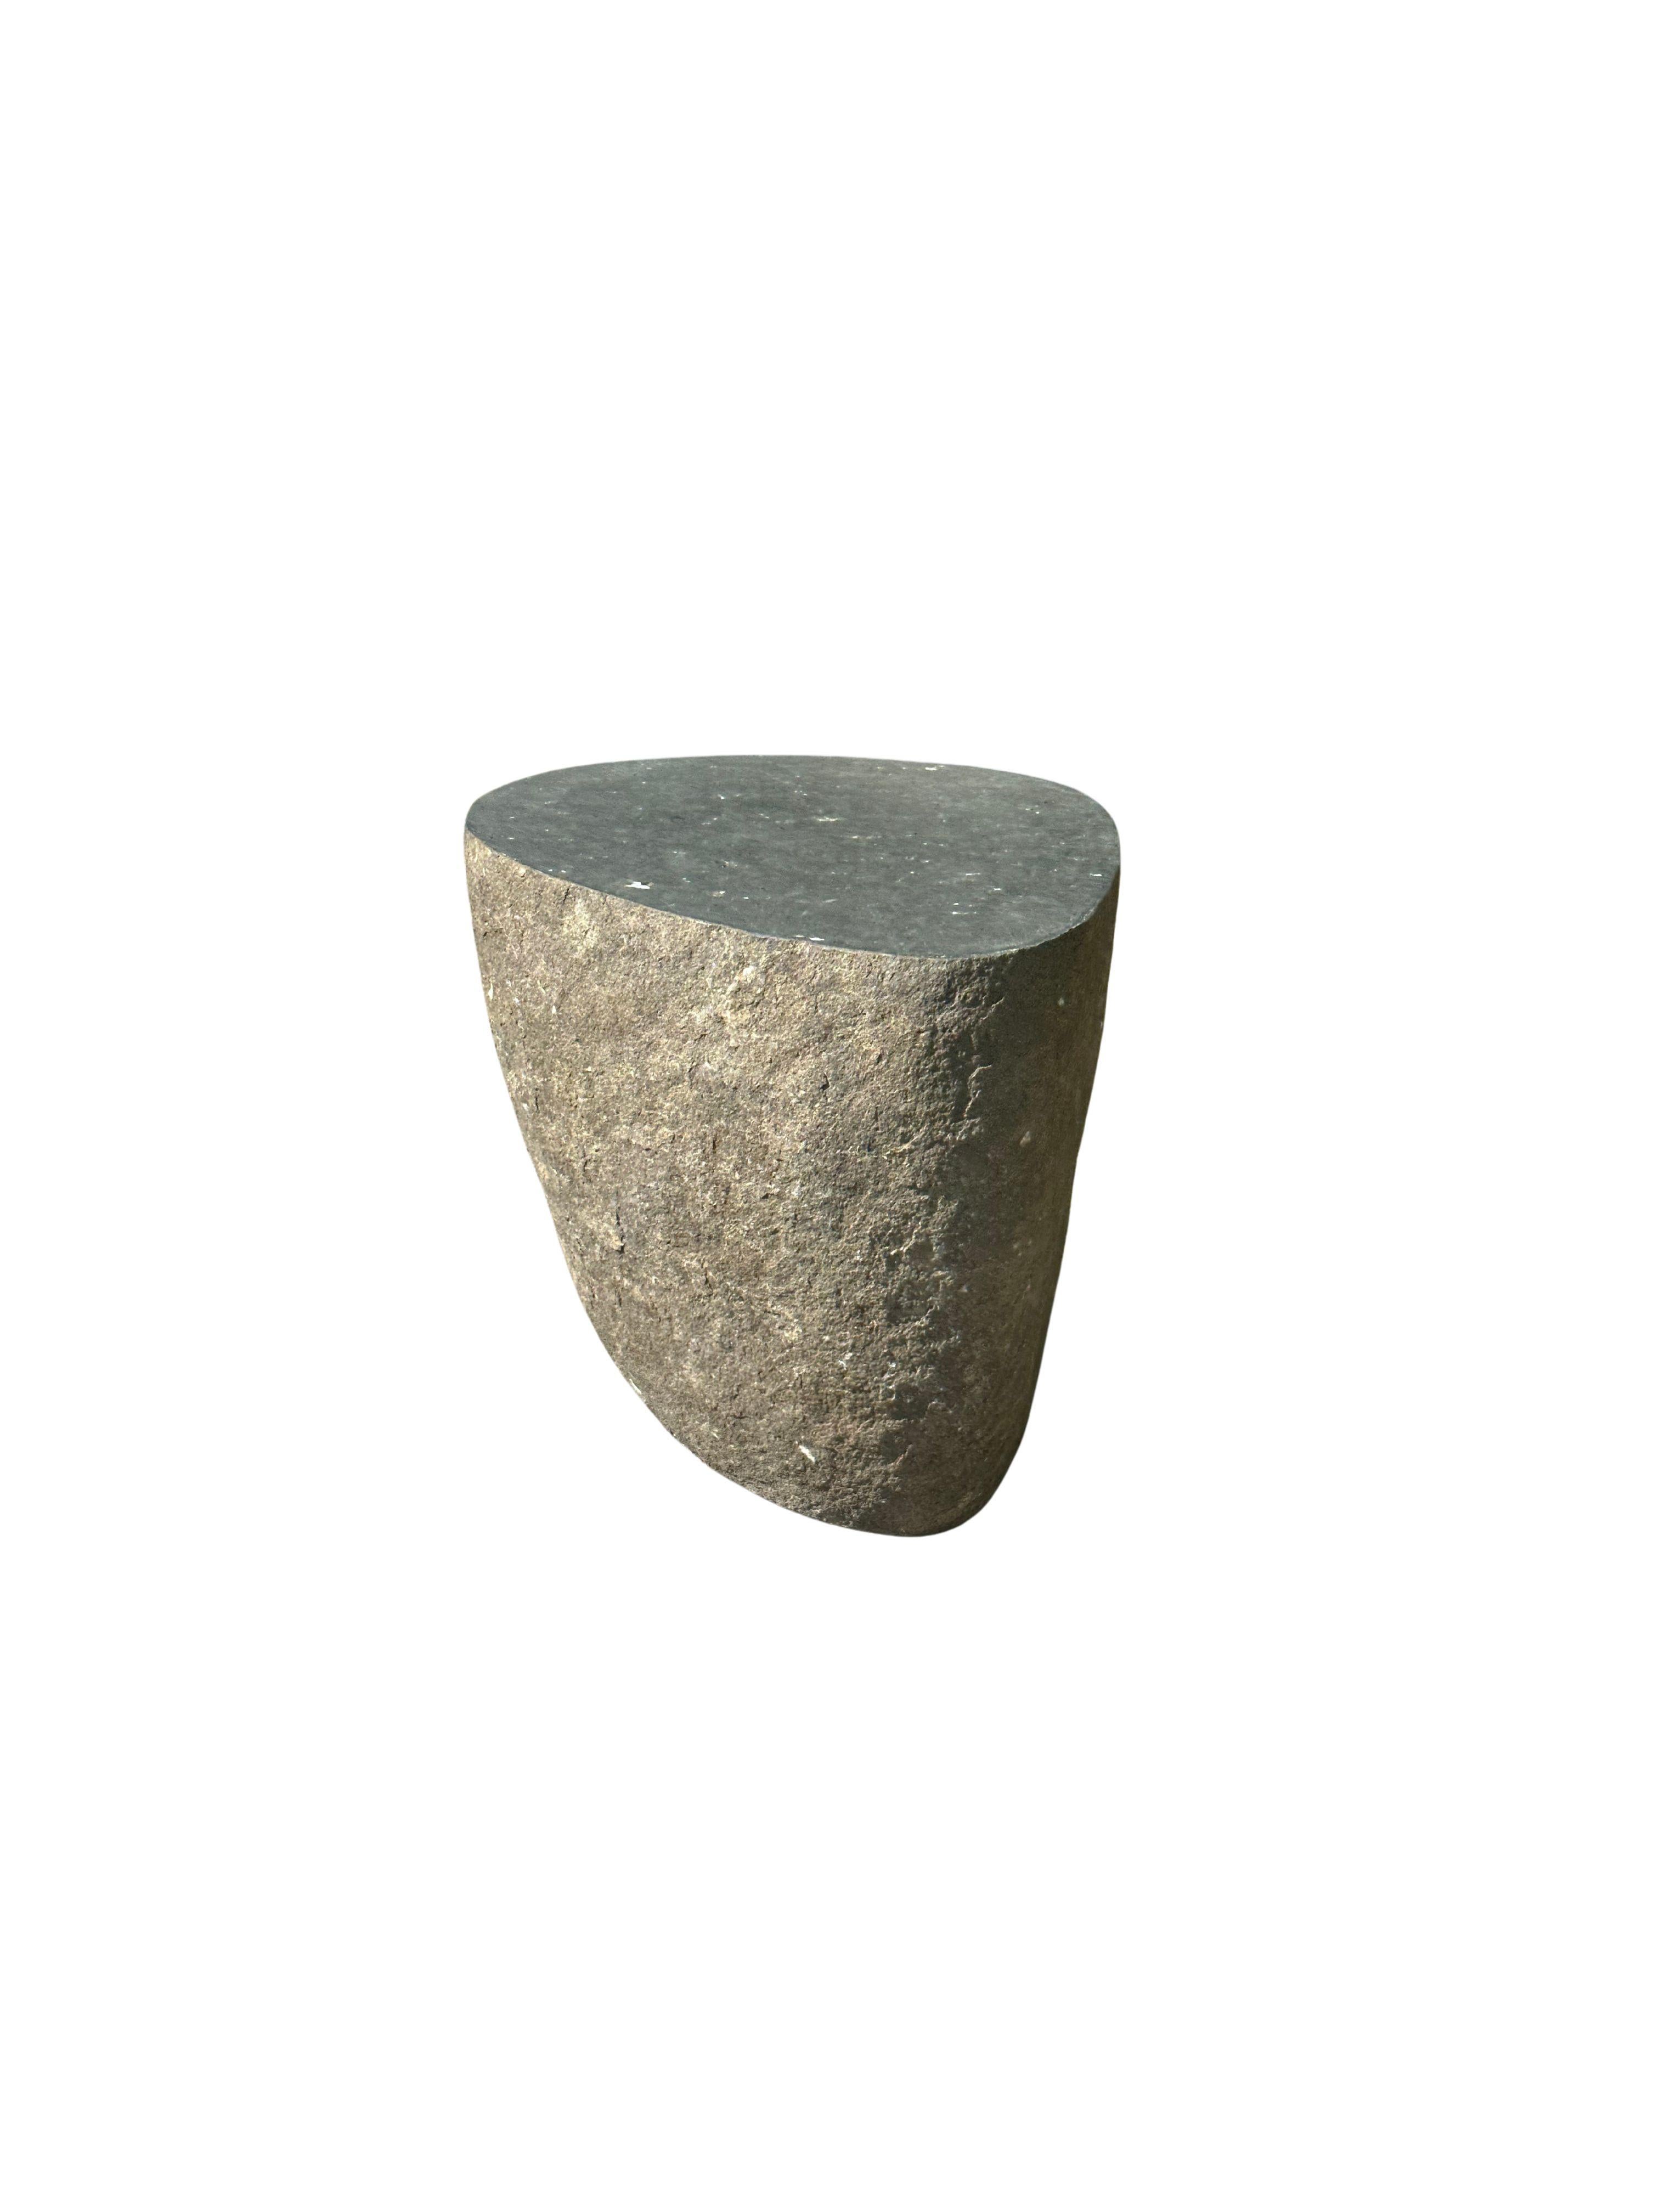 Une table d'appoint / piédestal en pierre arrondie incroyablement lourde et solide. Ce bel objet sculptural a été fabriqué à partir d'une pierre massive provenant du lit d'une rivière de l'est de Java. Un objet brut et organique avec de belles